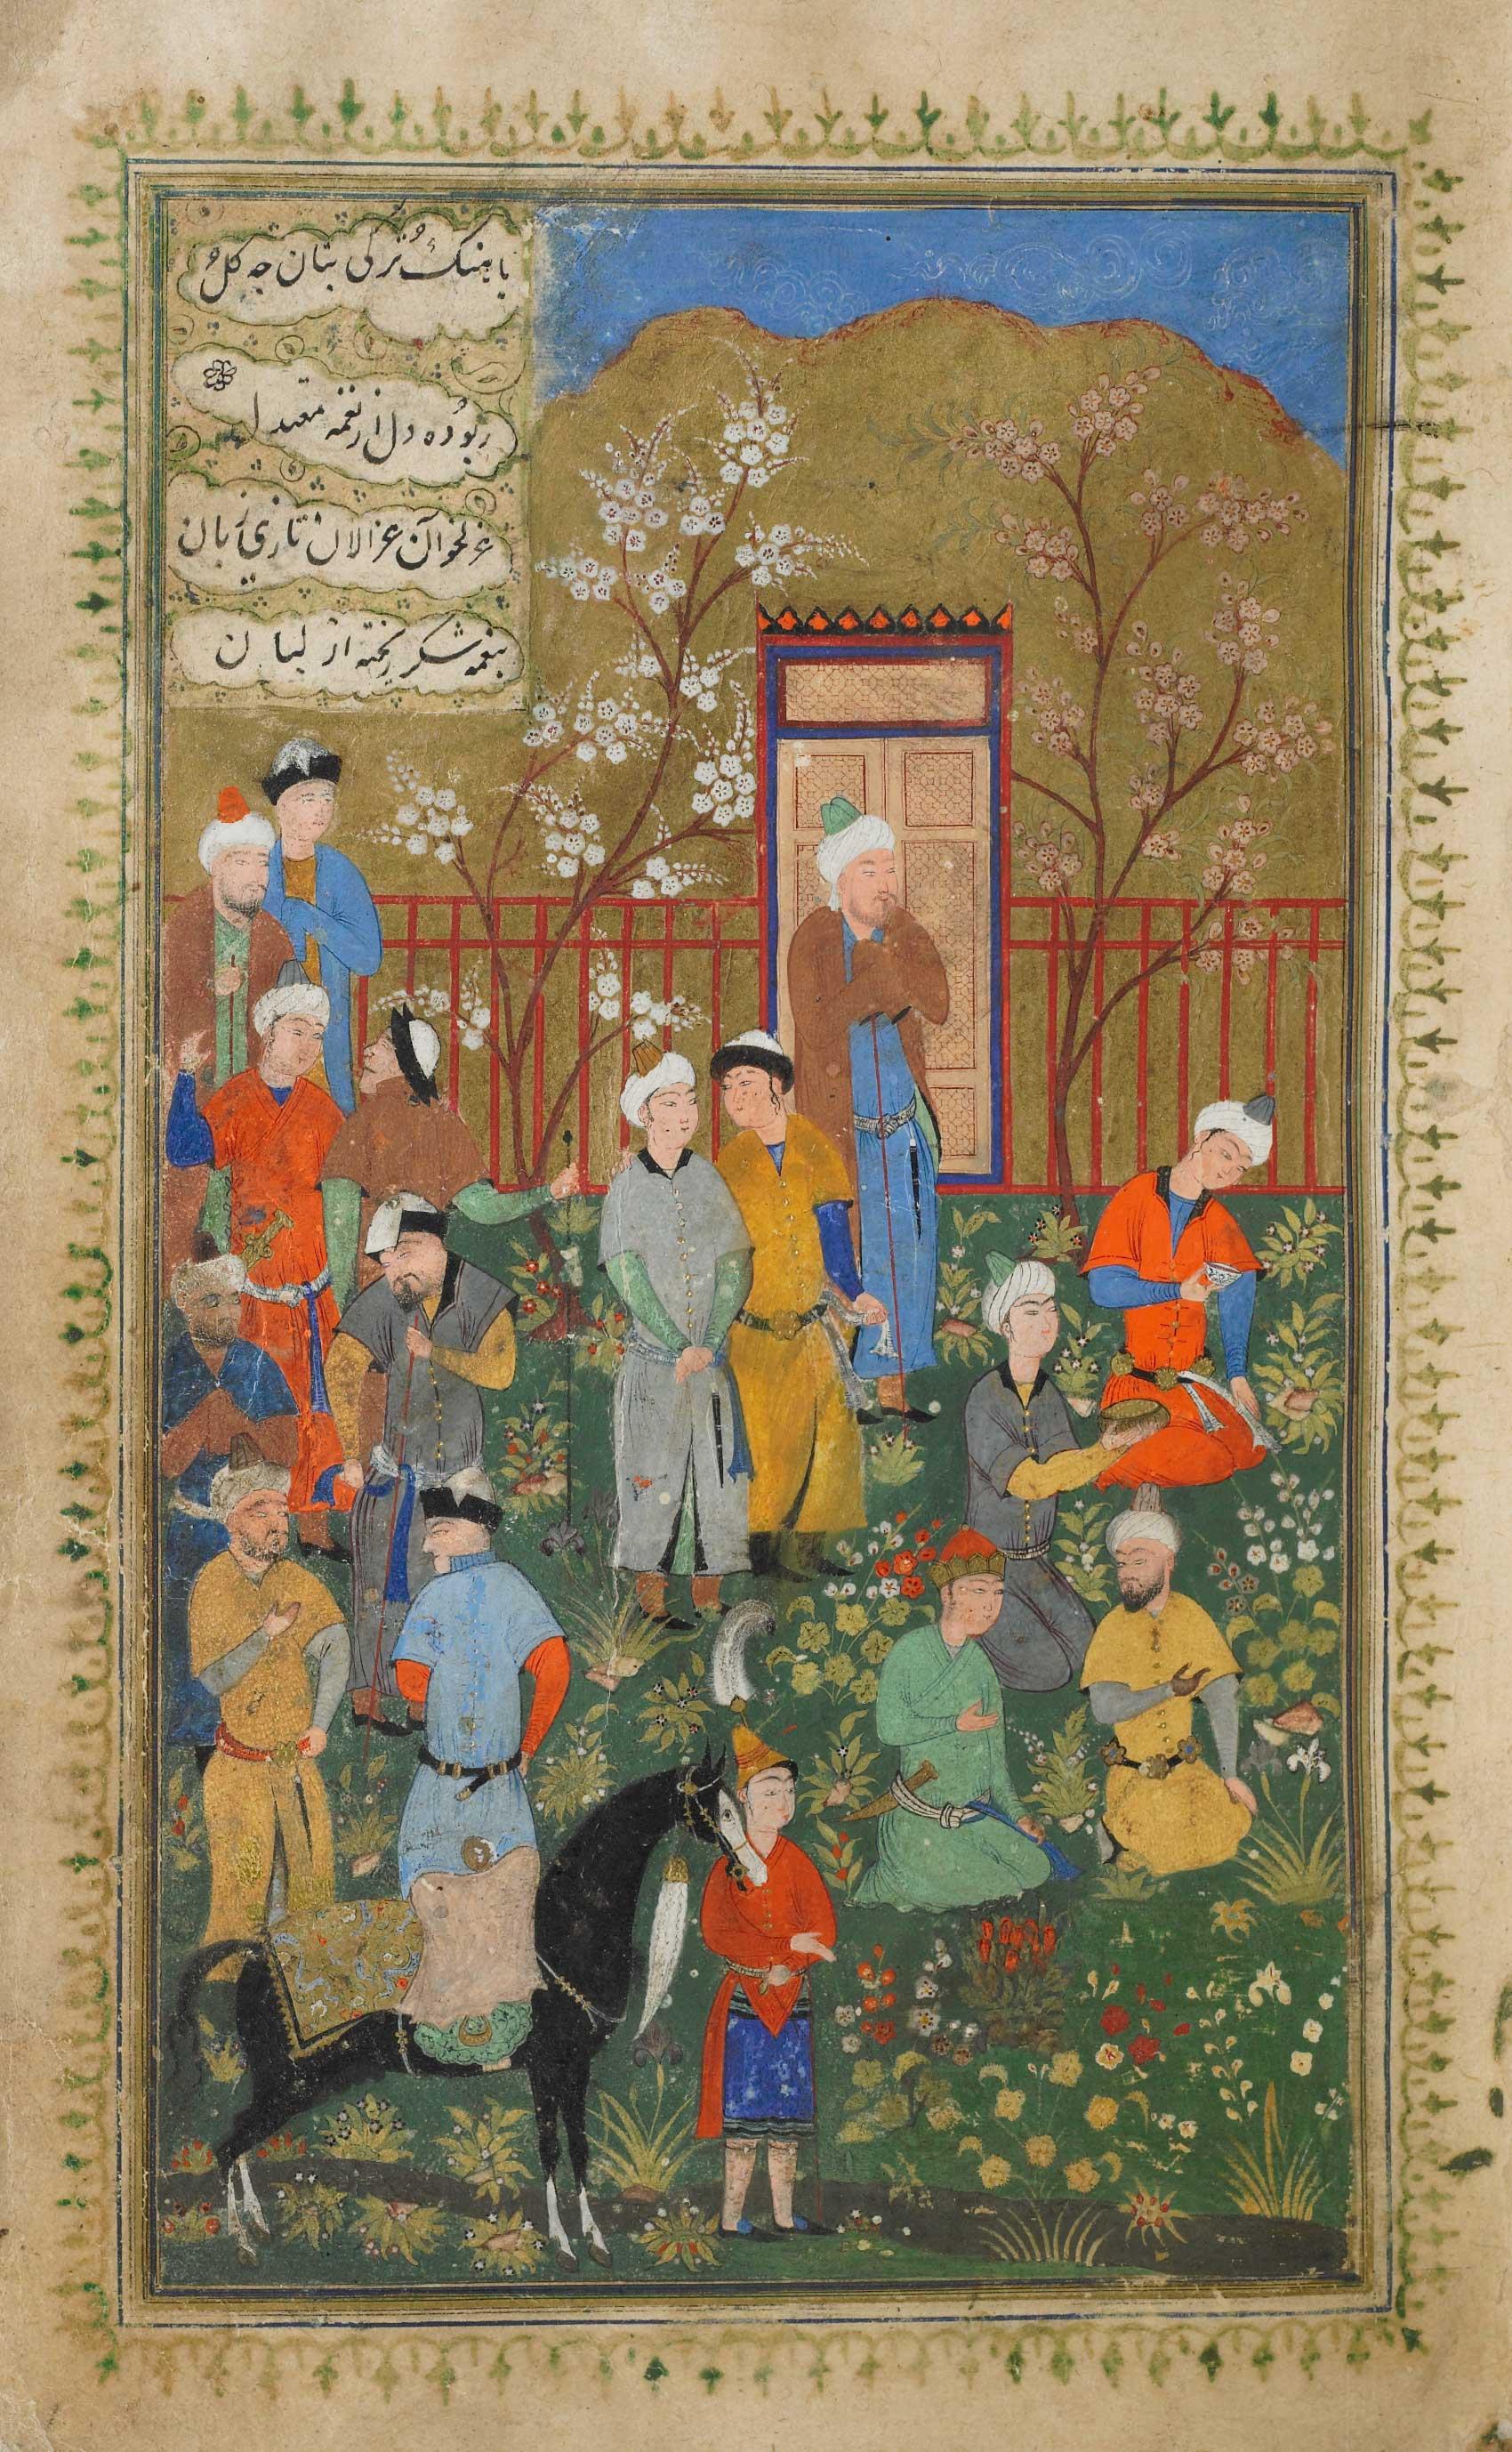 Timur holding court in a garden